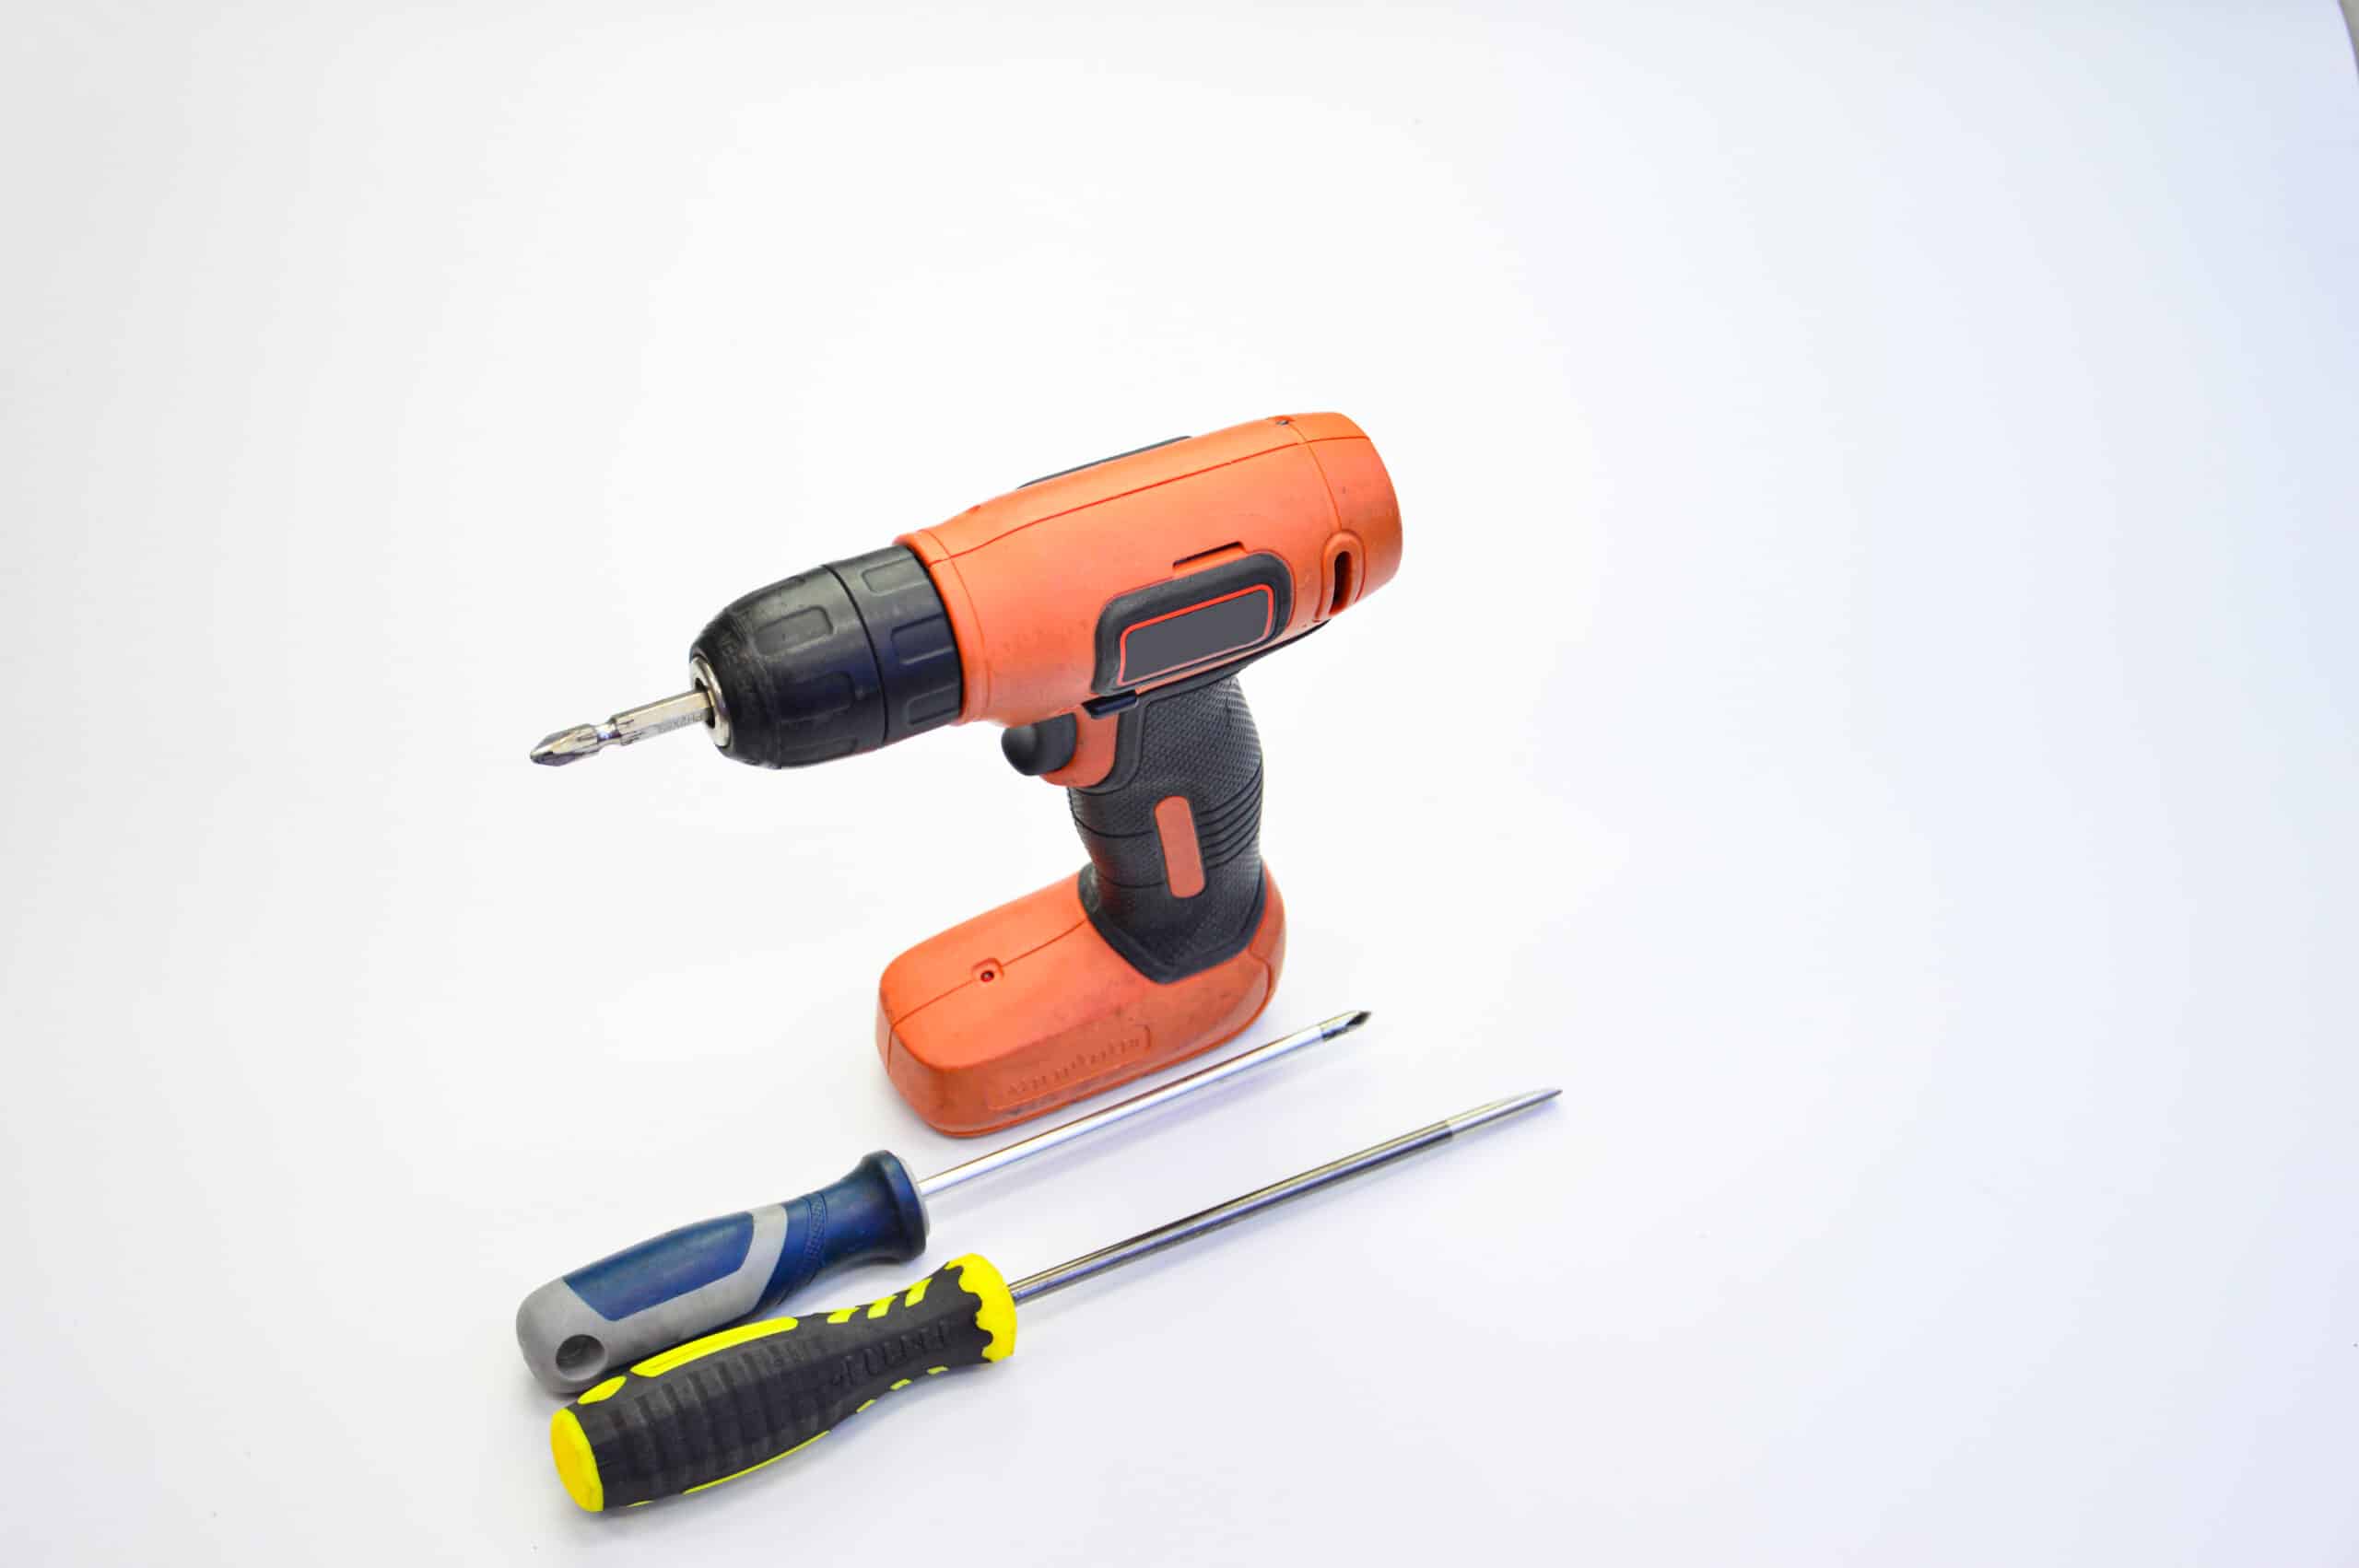 theprecisiontools.com : Can you use a screwdriver instead of a drill bit?